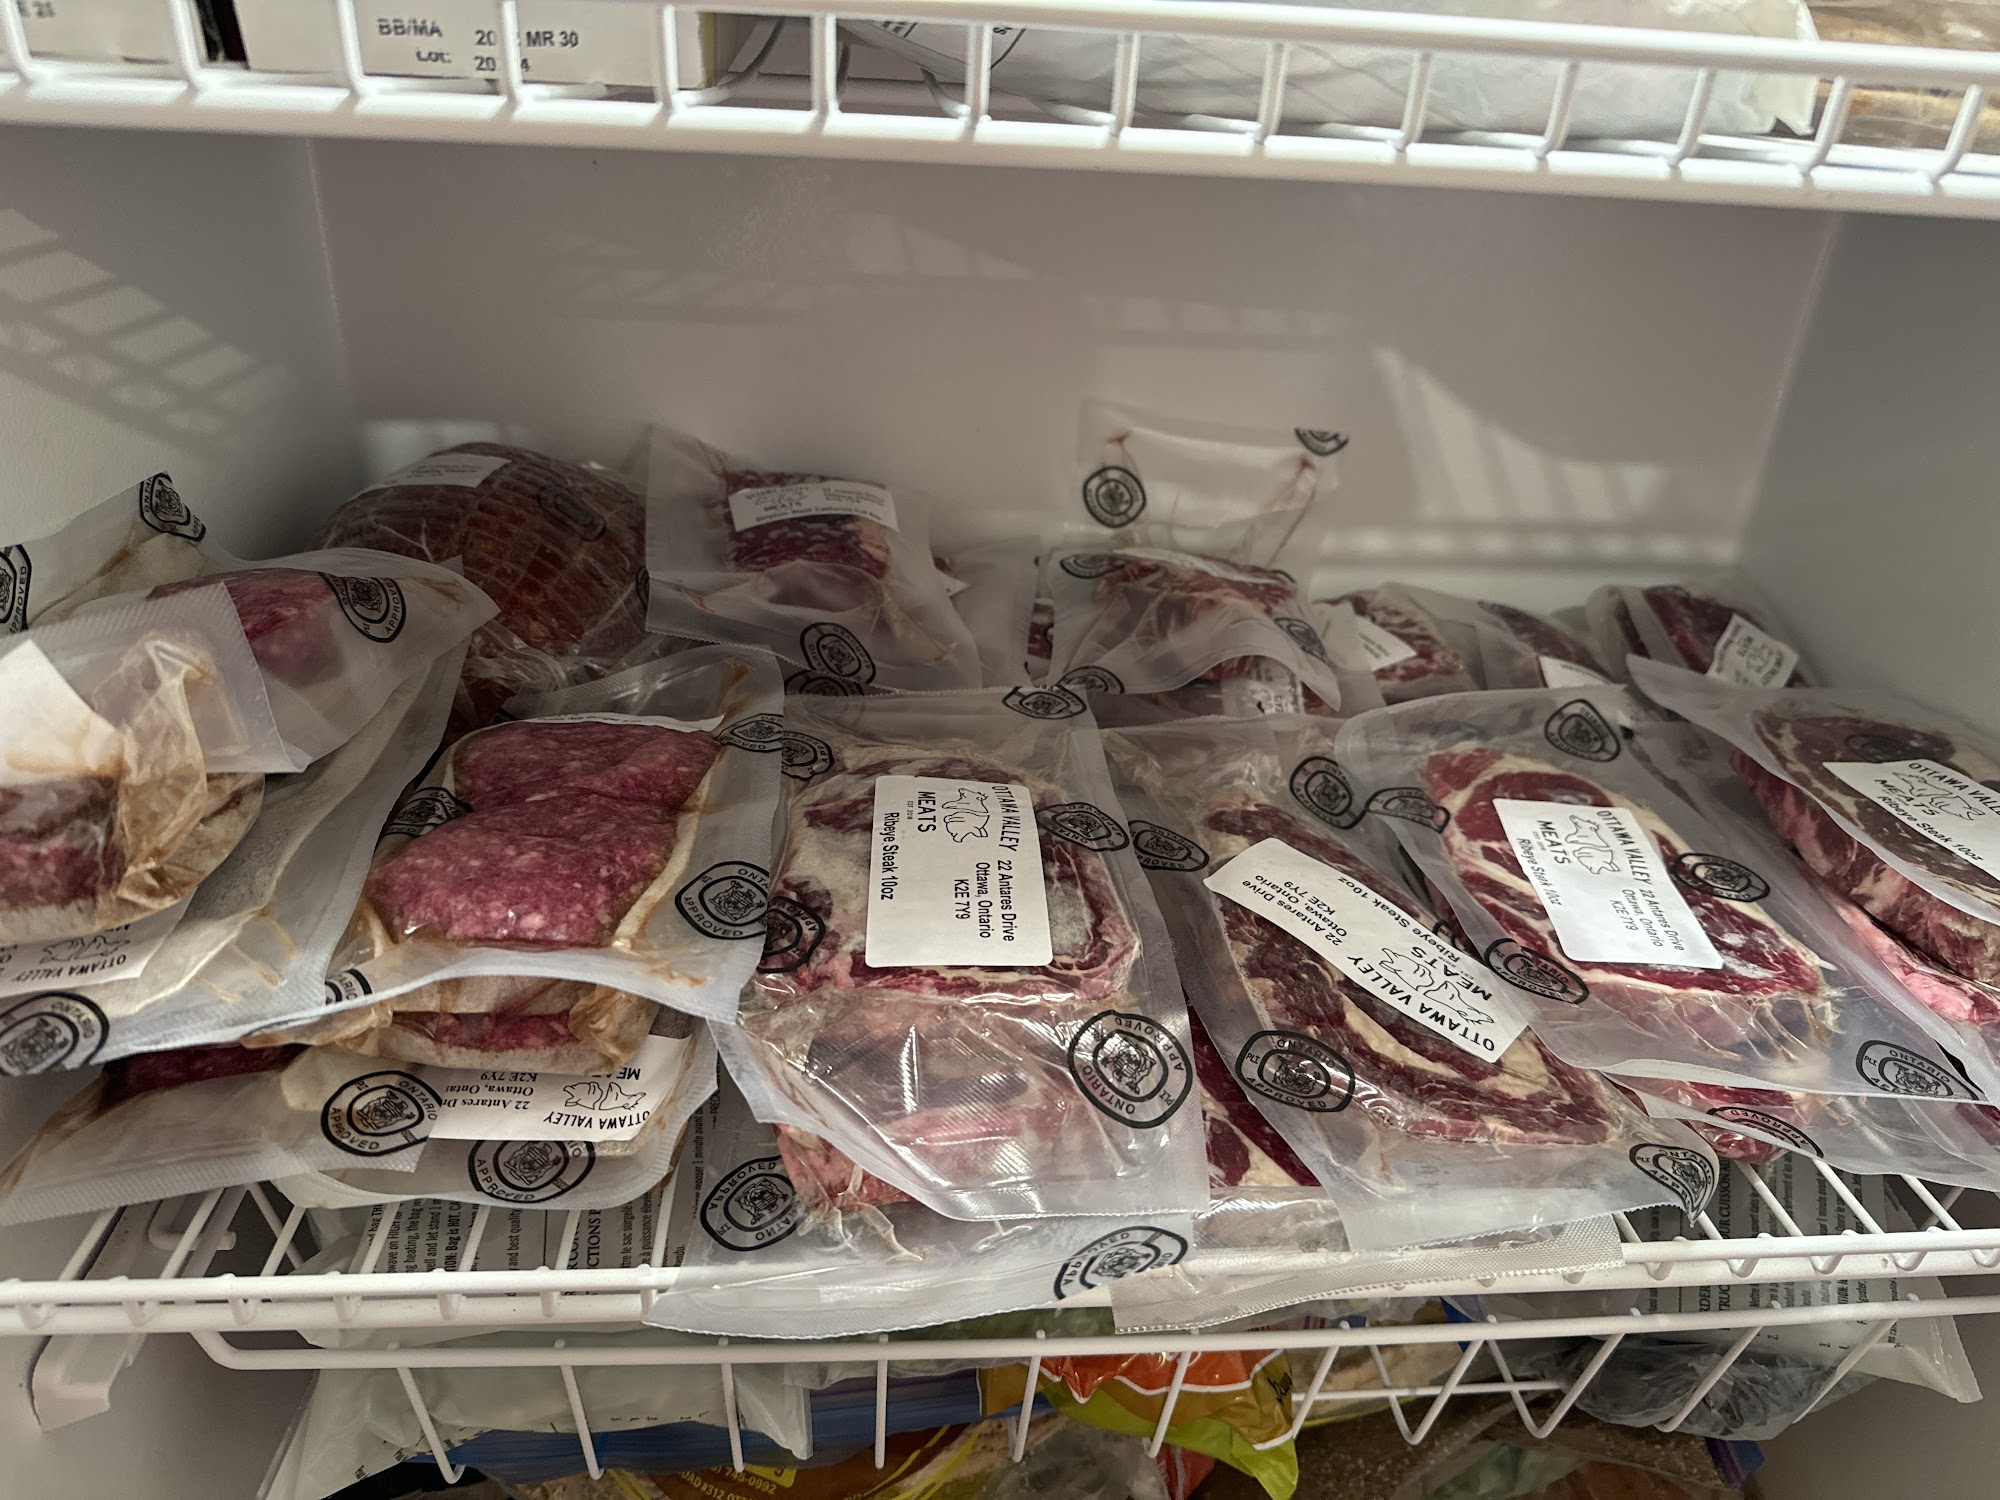 Ottawa Valley Meats